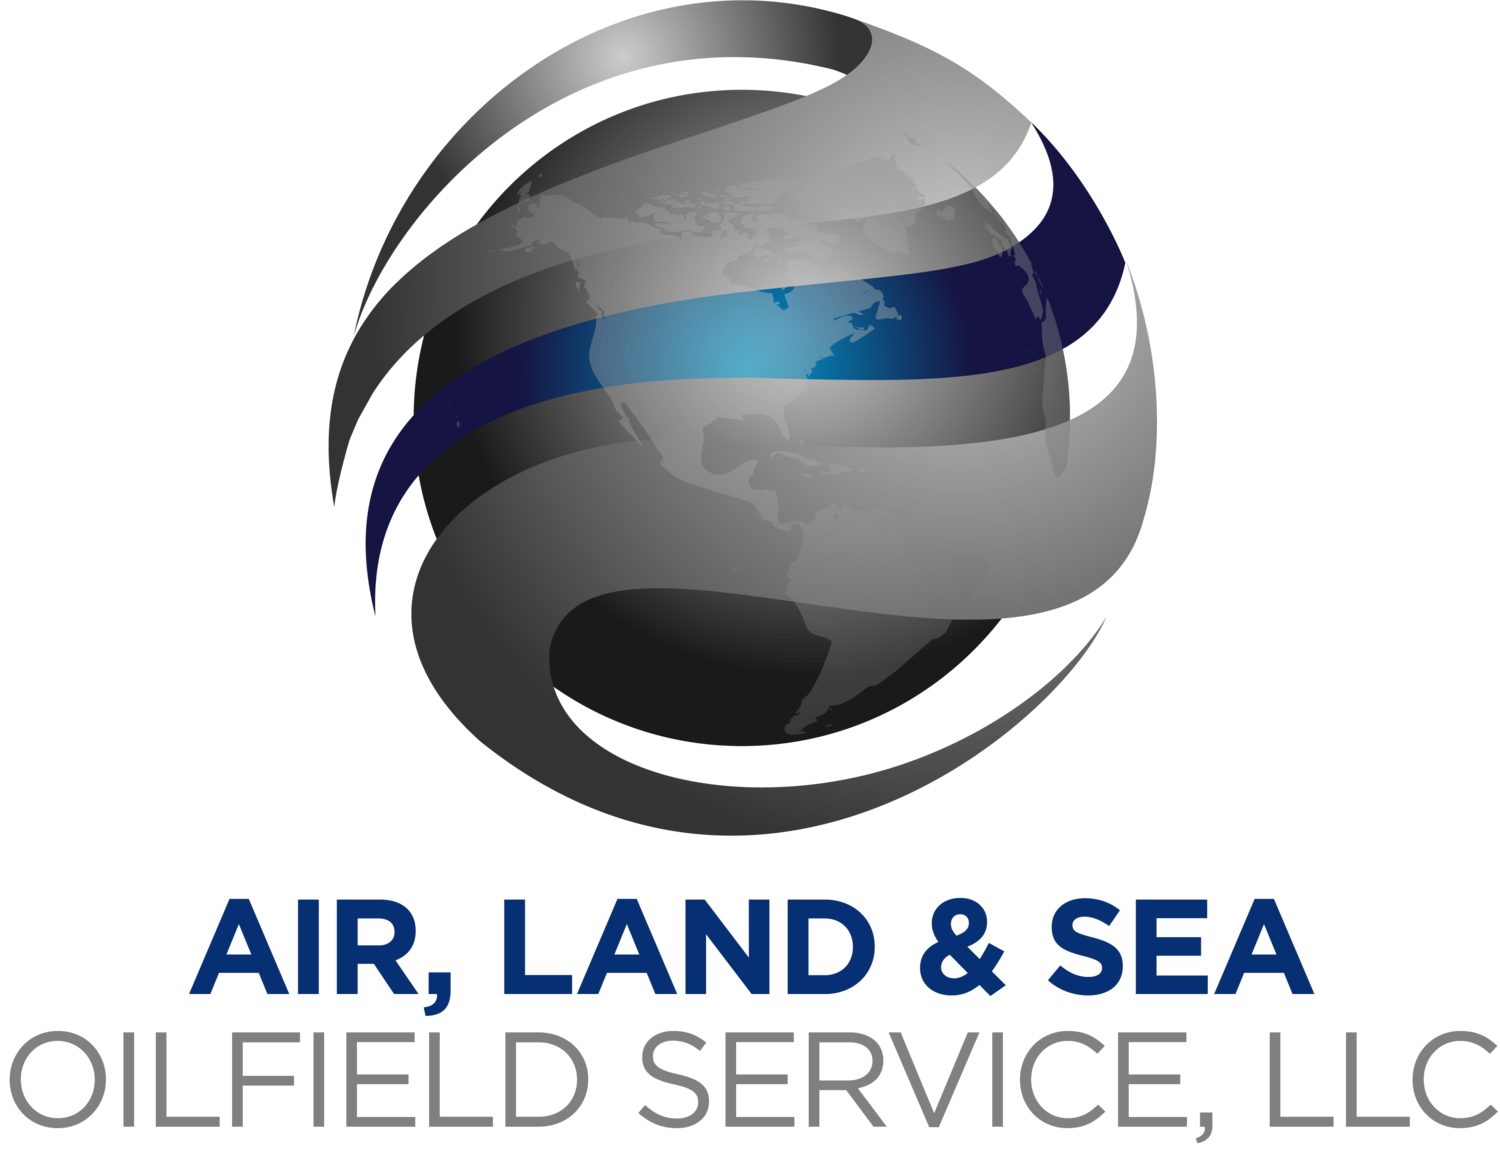 Air, Land & Sea Oil Field Services, LLC